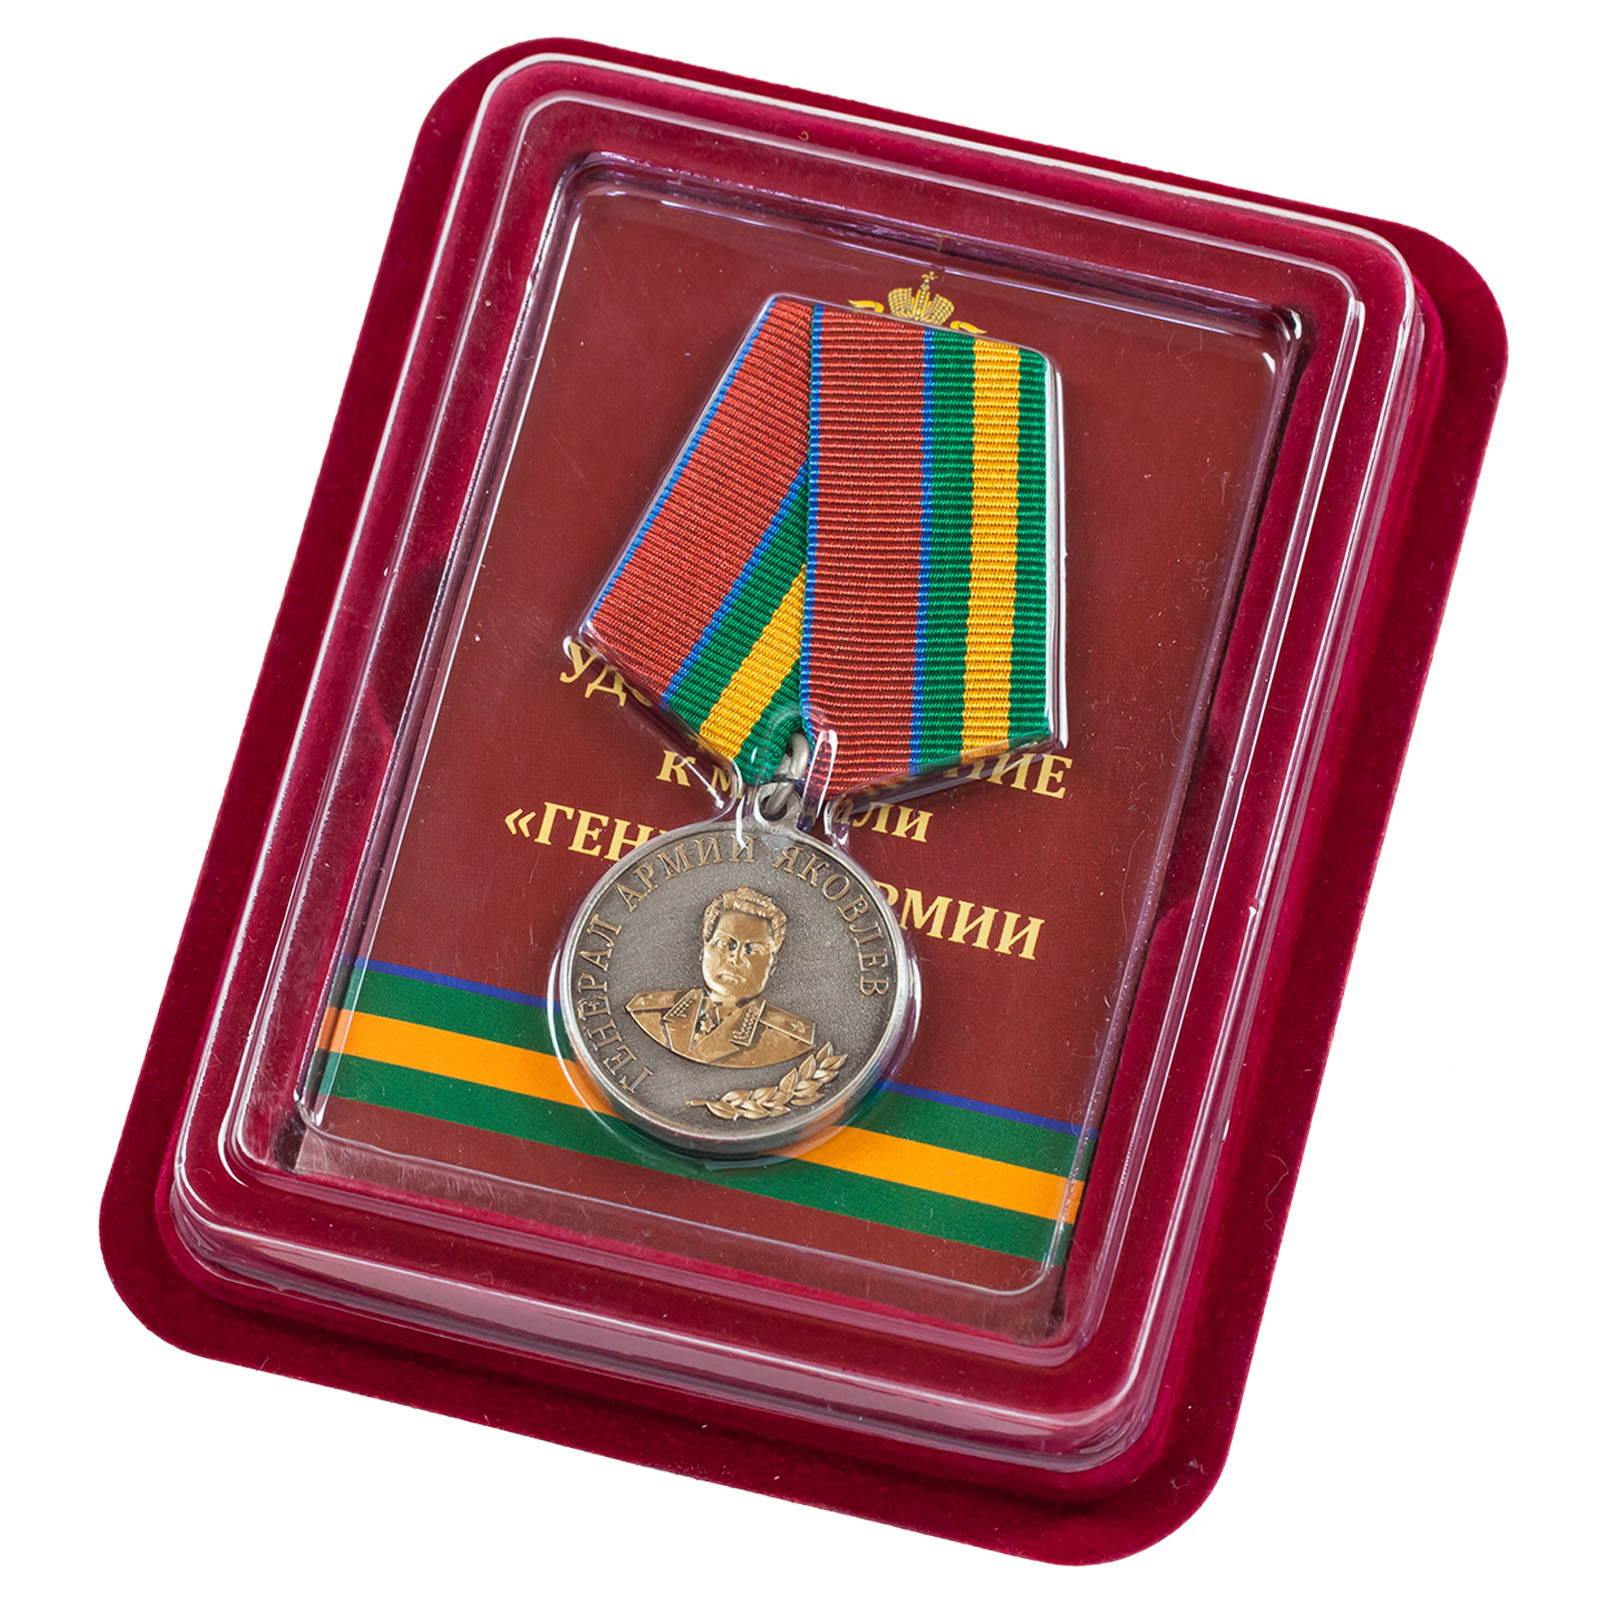 Купить медаль Росгвардии "Генерал армии Яковлев" в наградном футляре